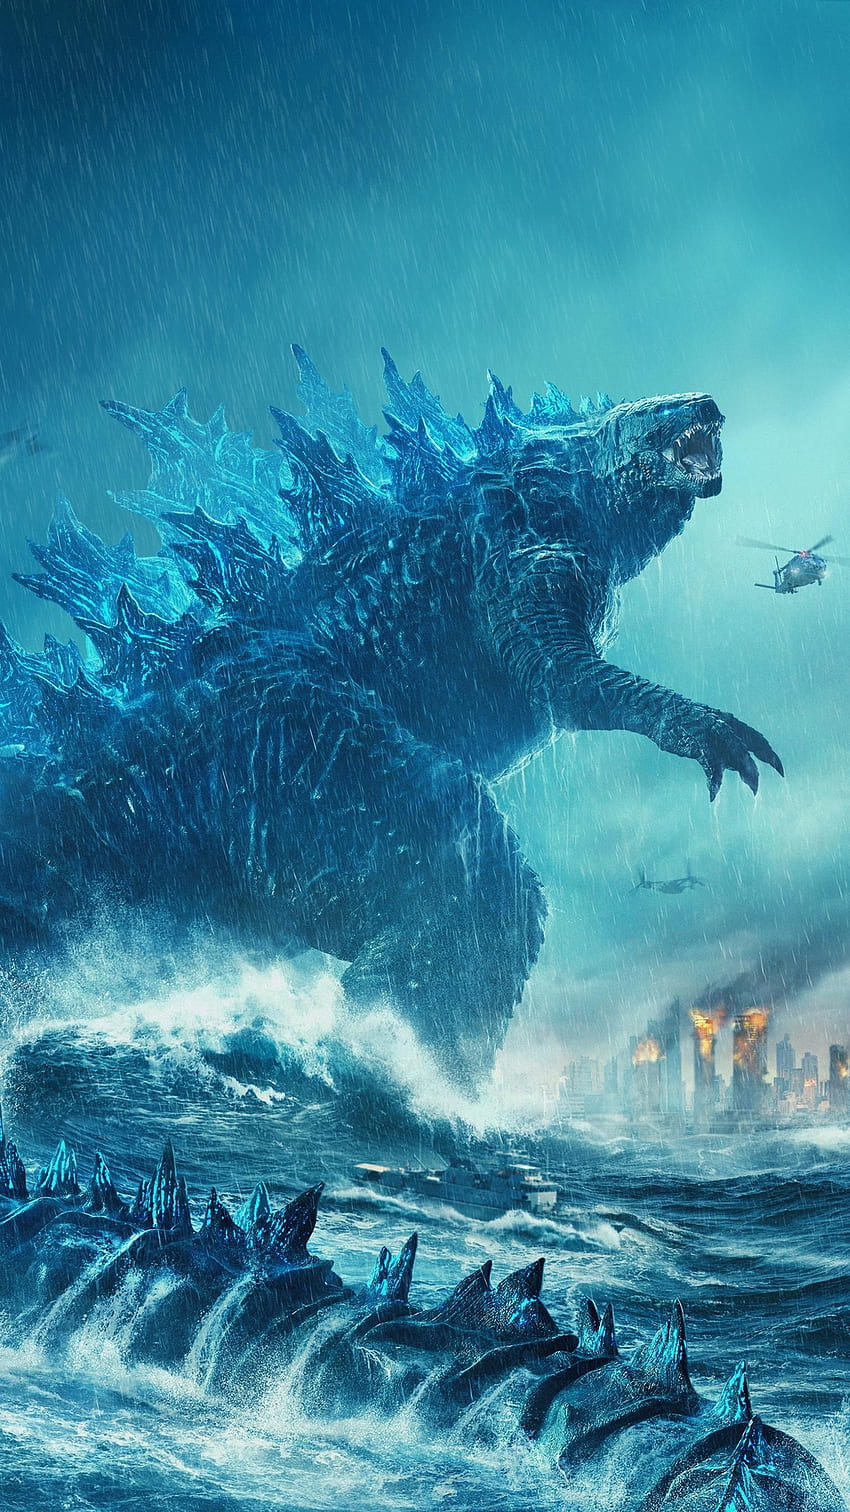 Godzilla: Rey de los monstruos (2019) Teléfono, Godzilla clásico fondo de pantalla del teléfono